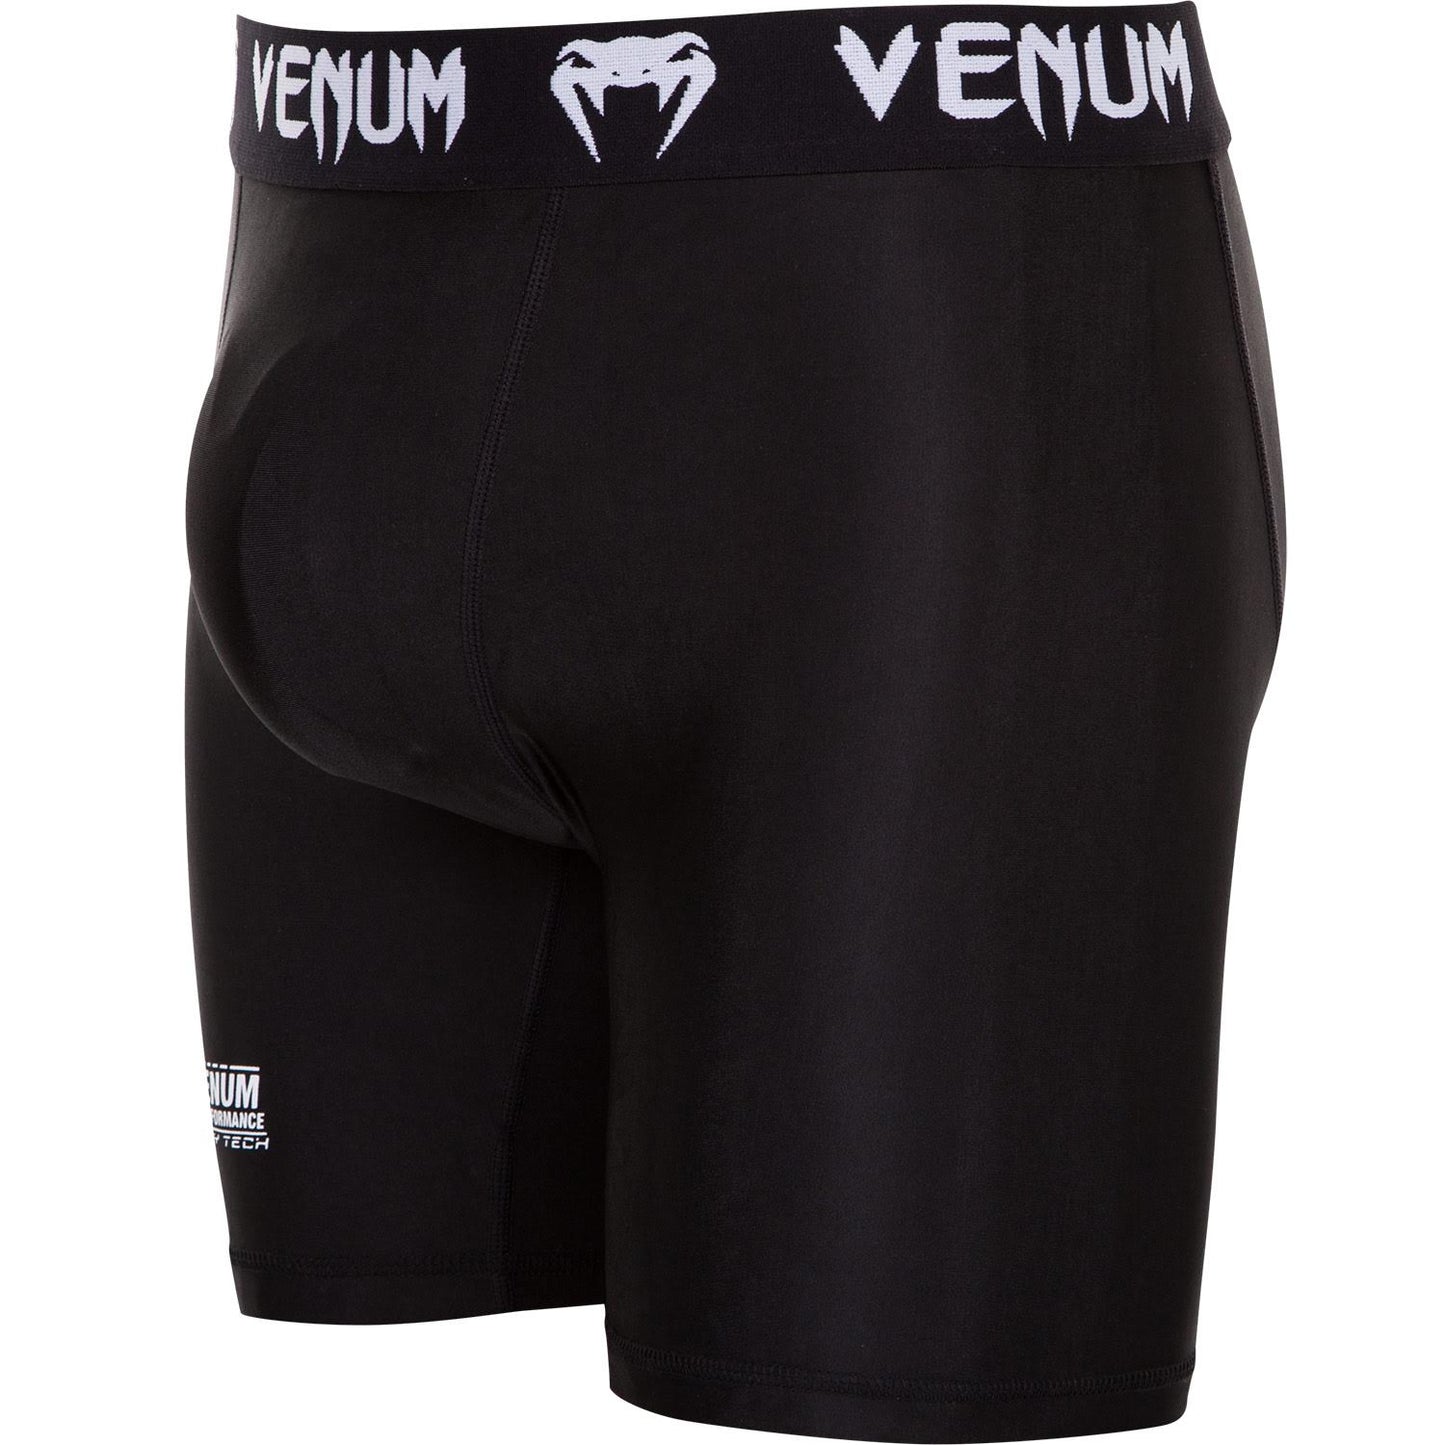 Pantalones cortos de compresión Venum Contender 2.0 - Negro/Blanco